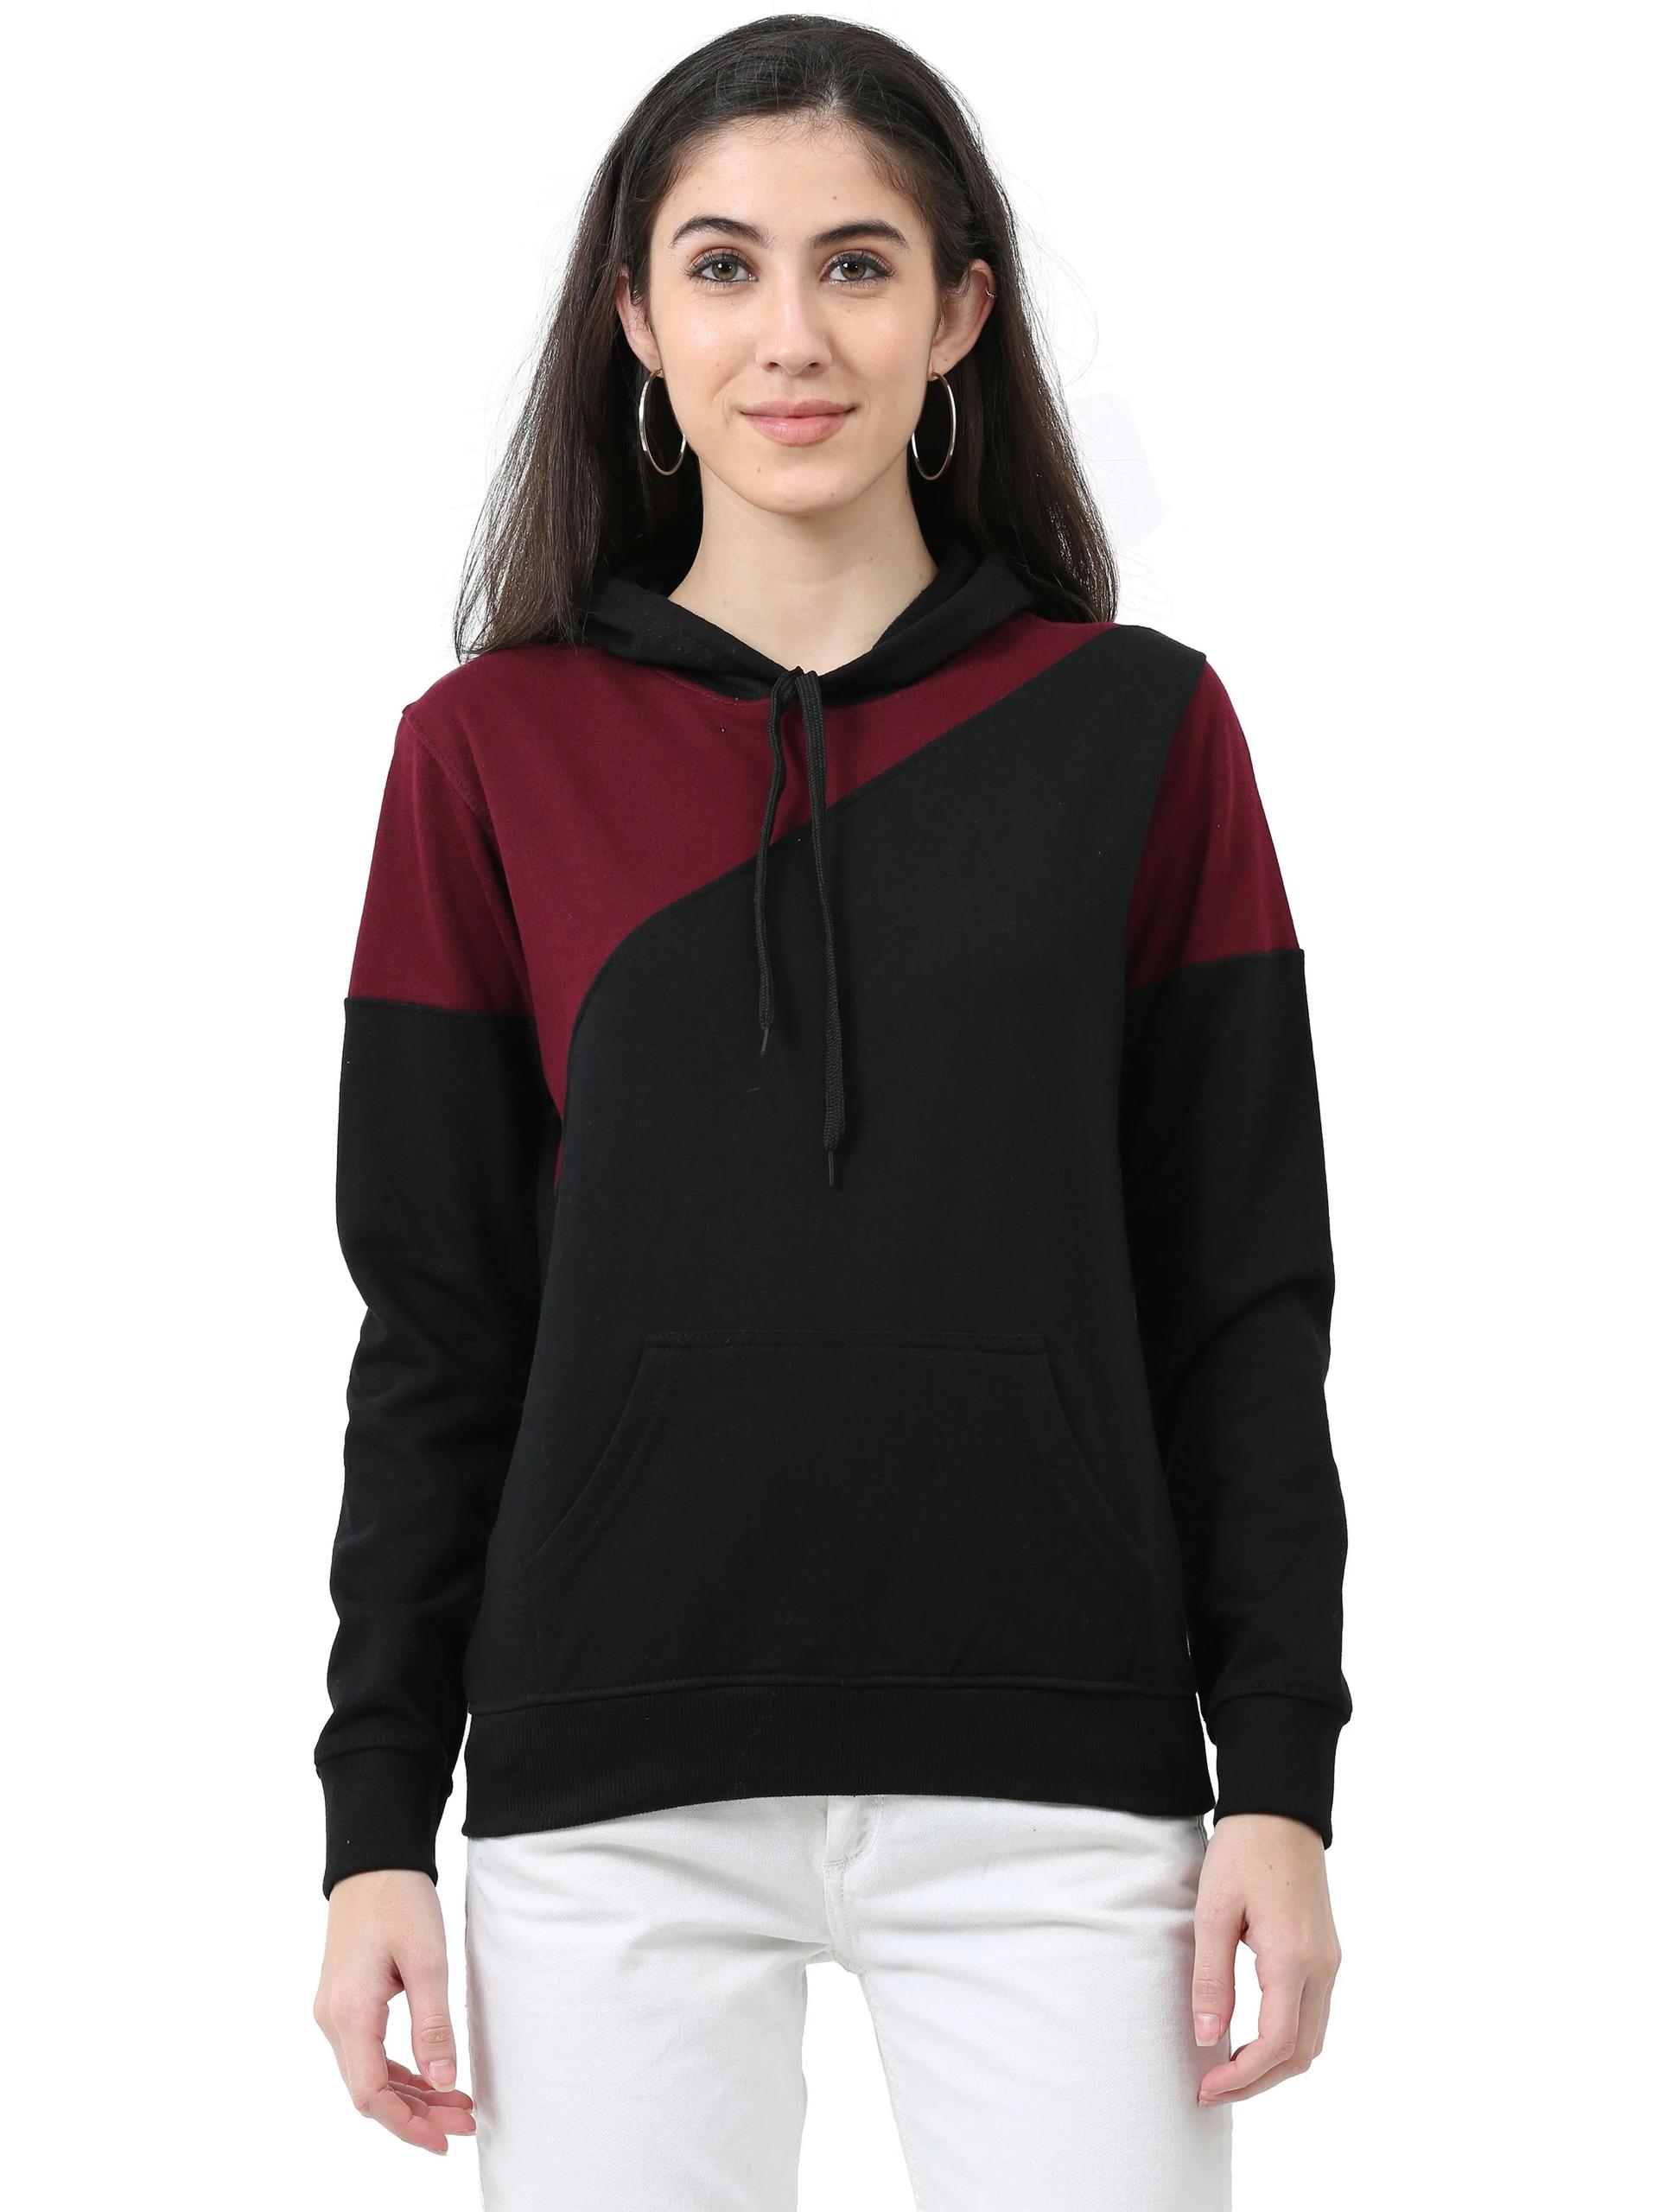 Women's Cotton Color Block  Sweatshirt Hoodies